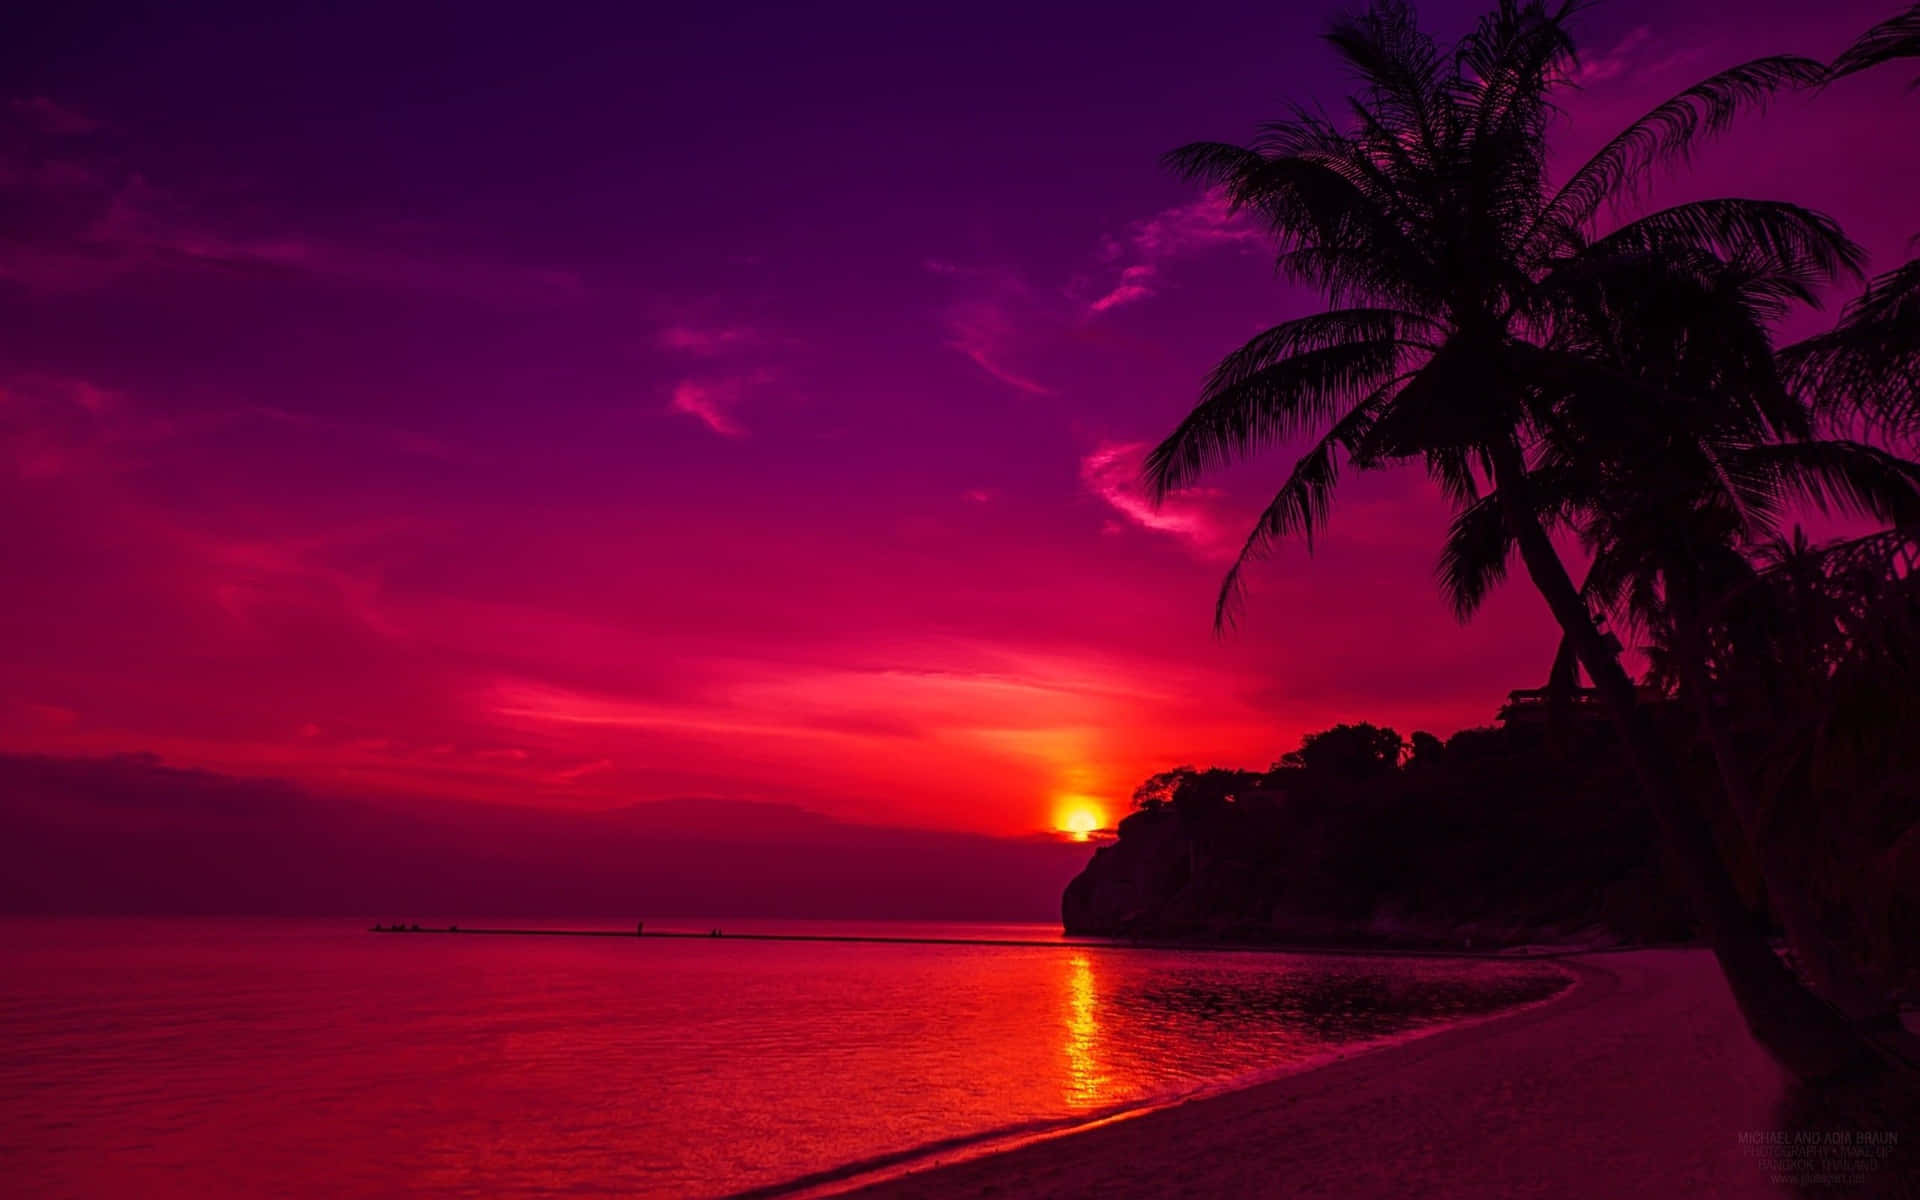 Einträumerischer Strandsonnenuntergang, Perfekt Für Einen Romantischen Abend.